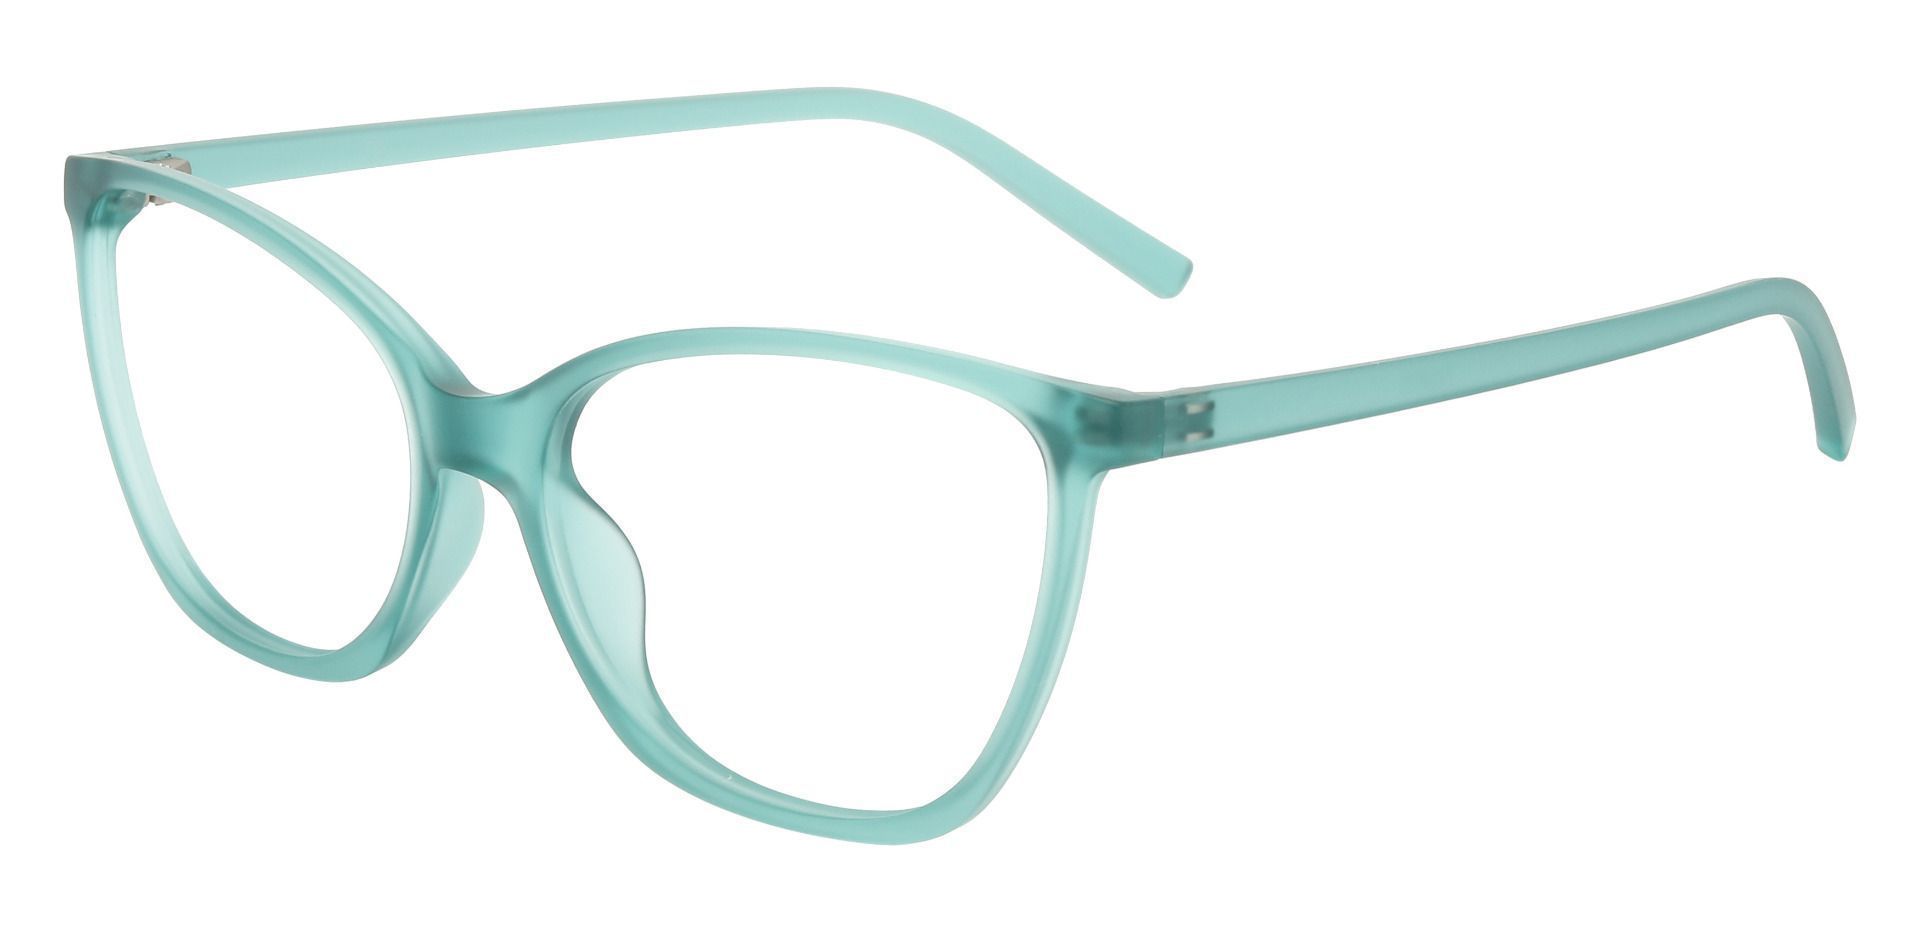 Meadow Cat Eye Prescription Glasses - Green